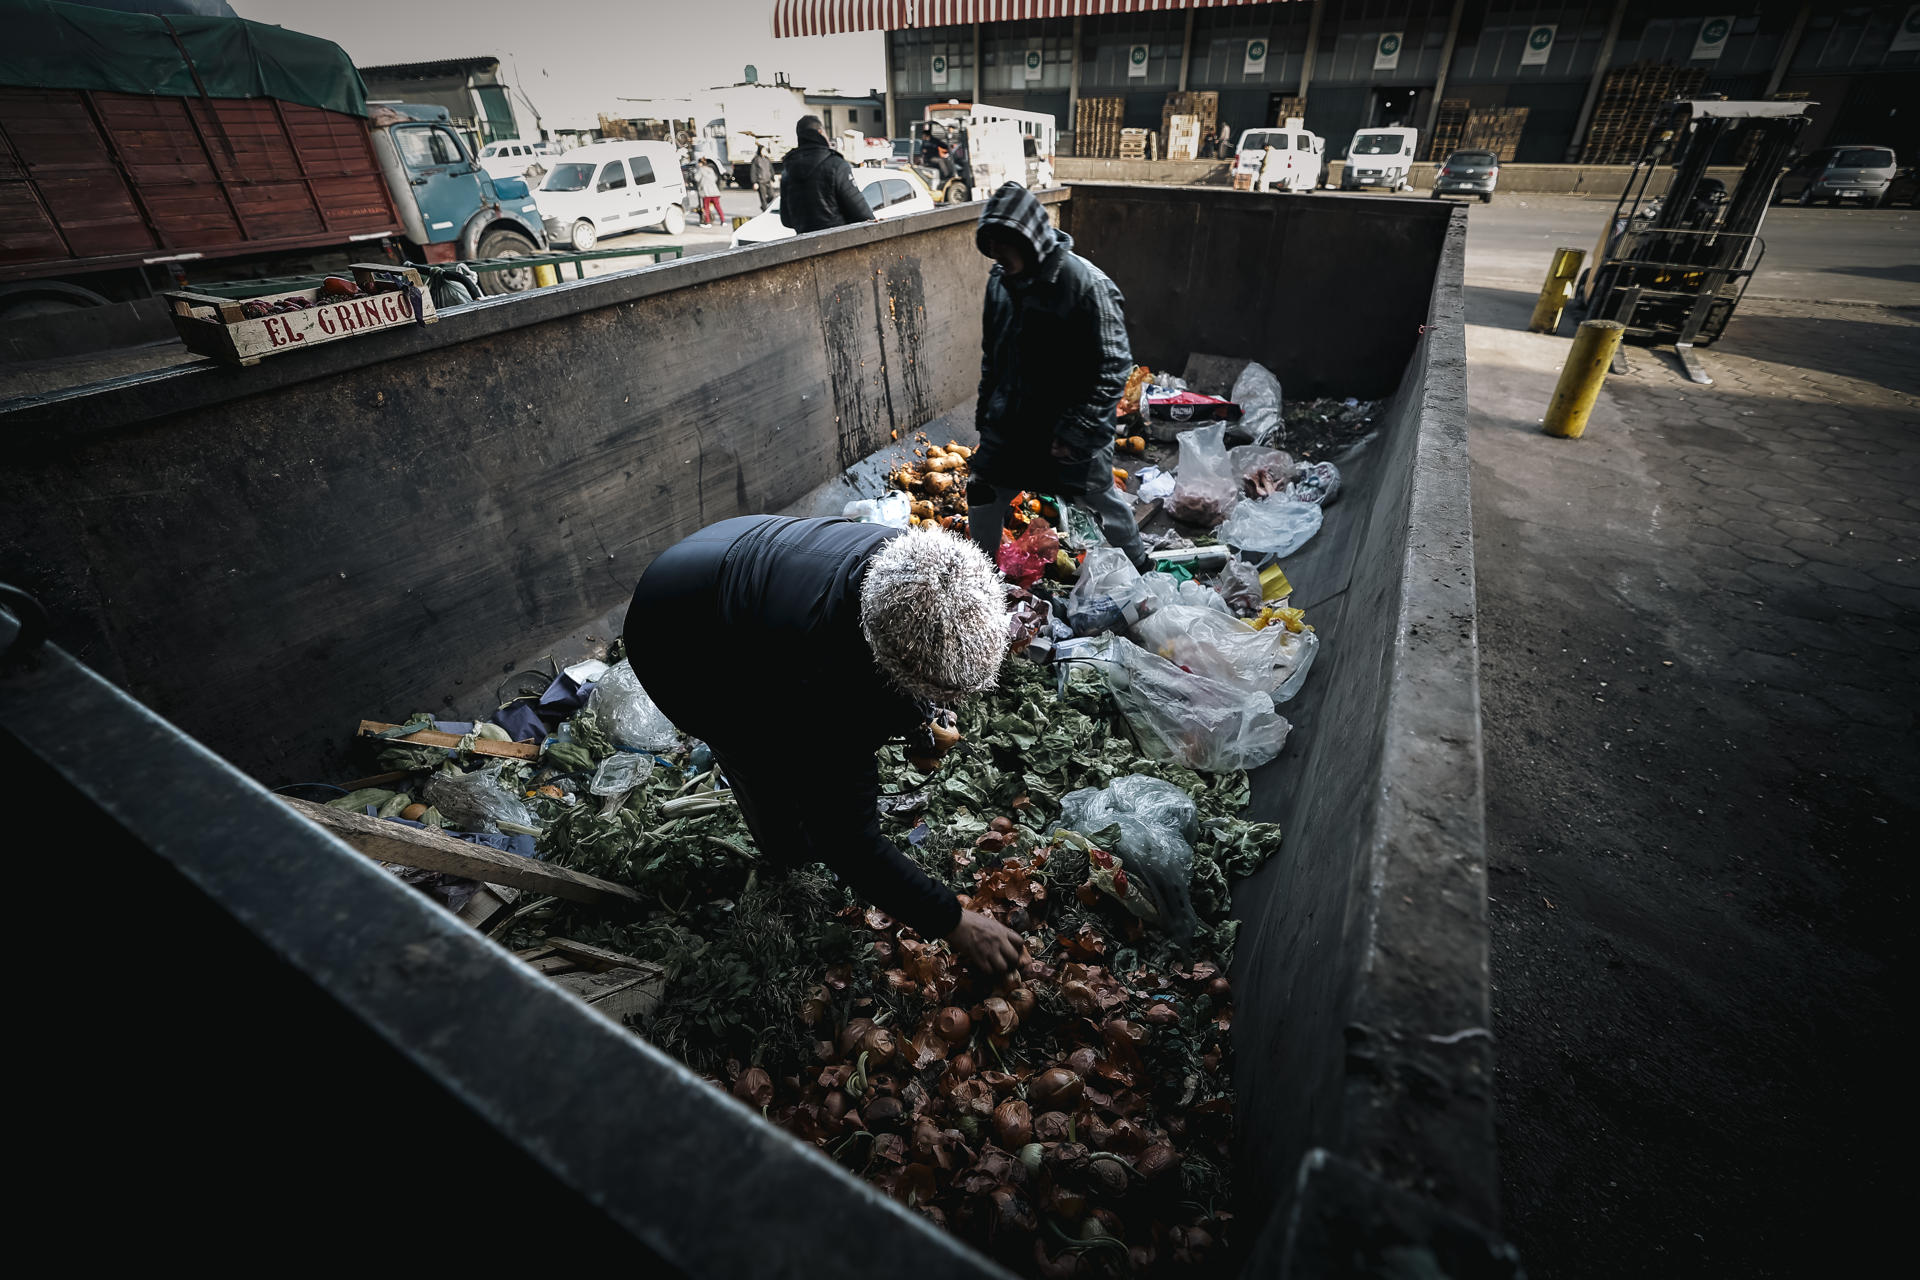 Situación. Fotografía de archivo de EFE, en la que un par de personas buscan comida, entre un contenedor de residuos en un barrio de la periferia de Buenos Aires (Argentina).